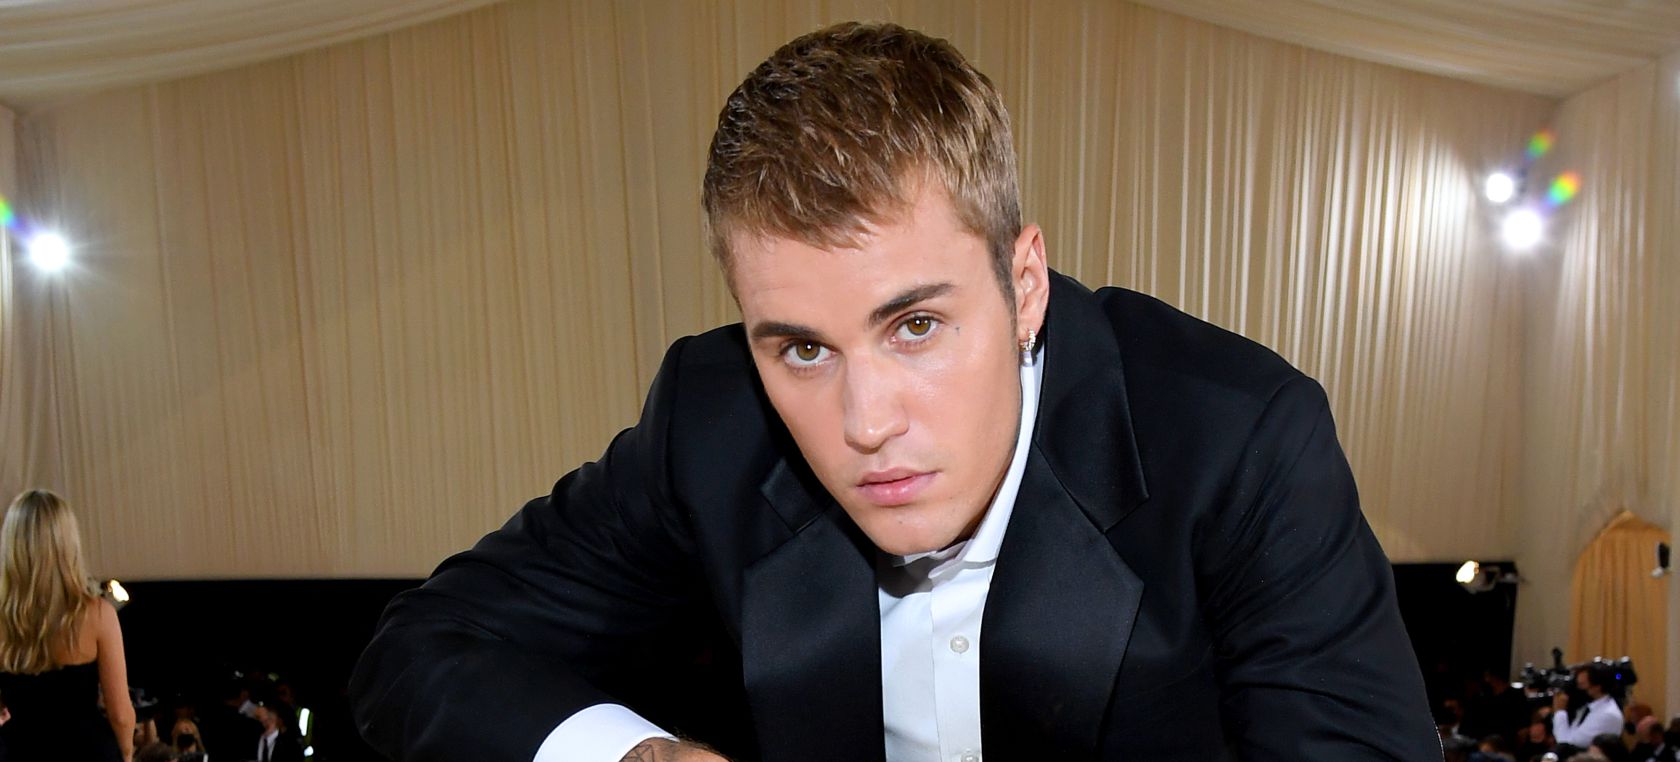 Justin Bieber manda un mensaje claro sobre el racismo en su último  concierto en Noruega | Música | LOS40